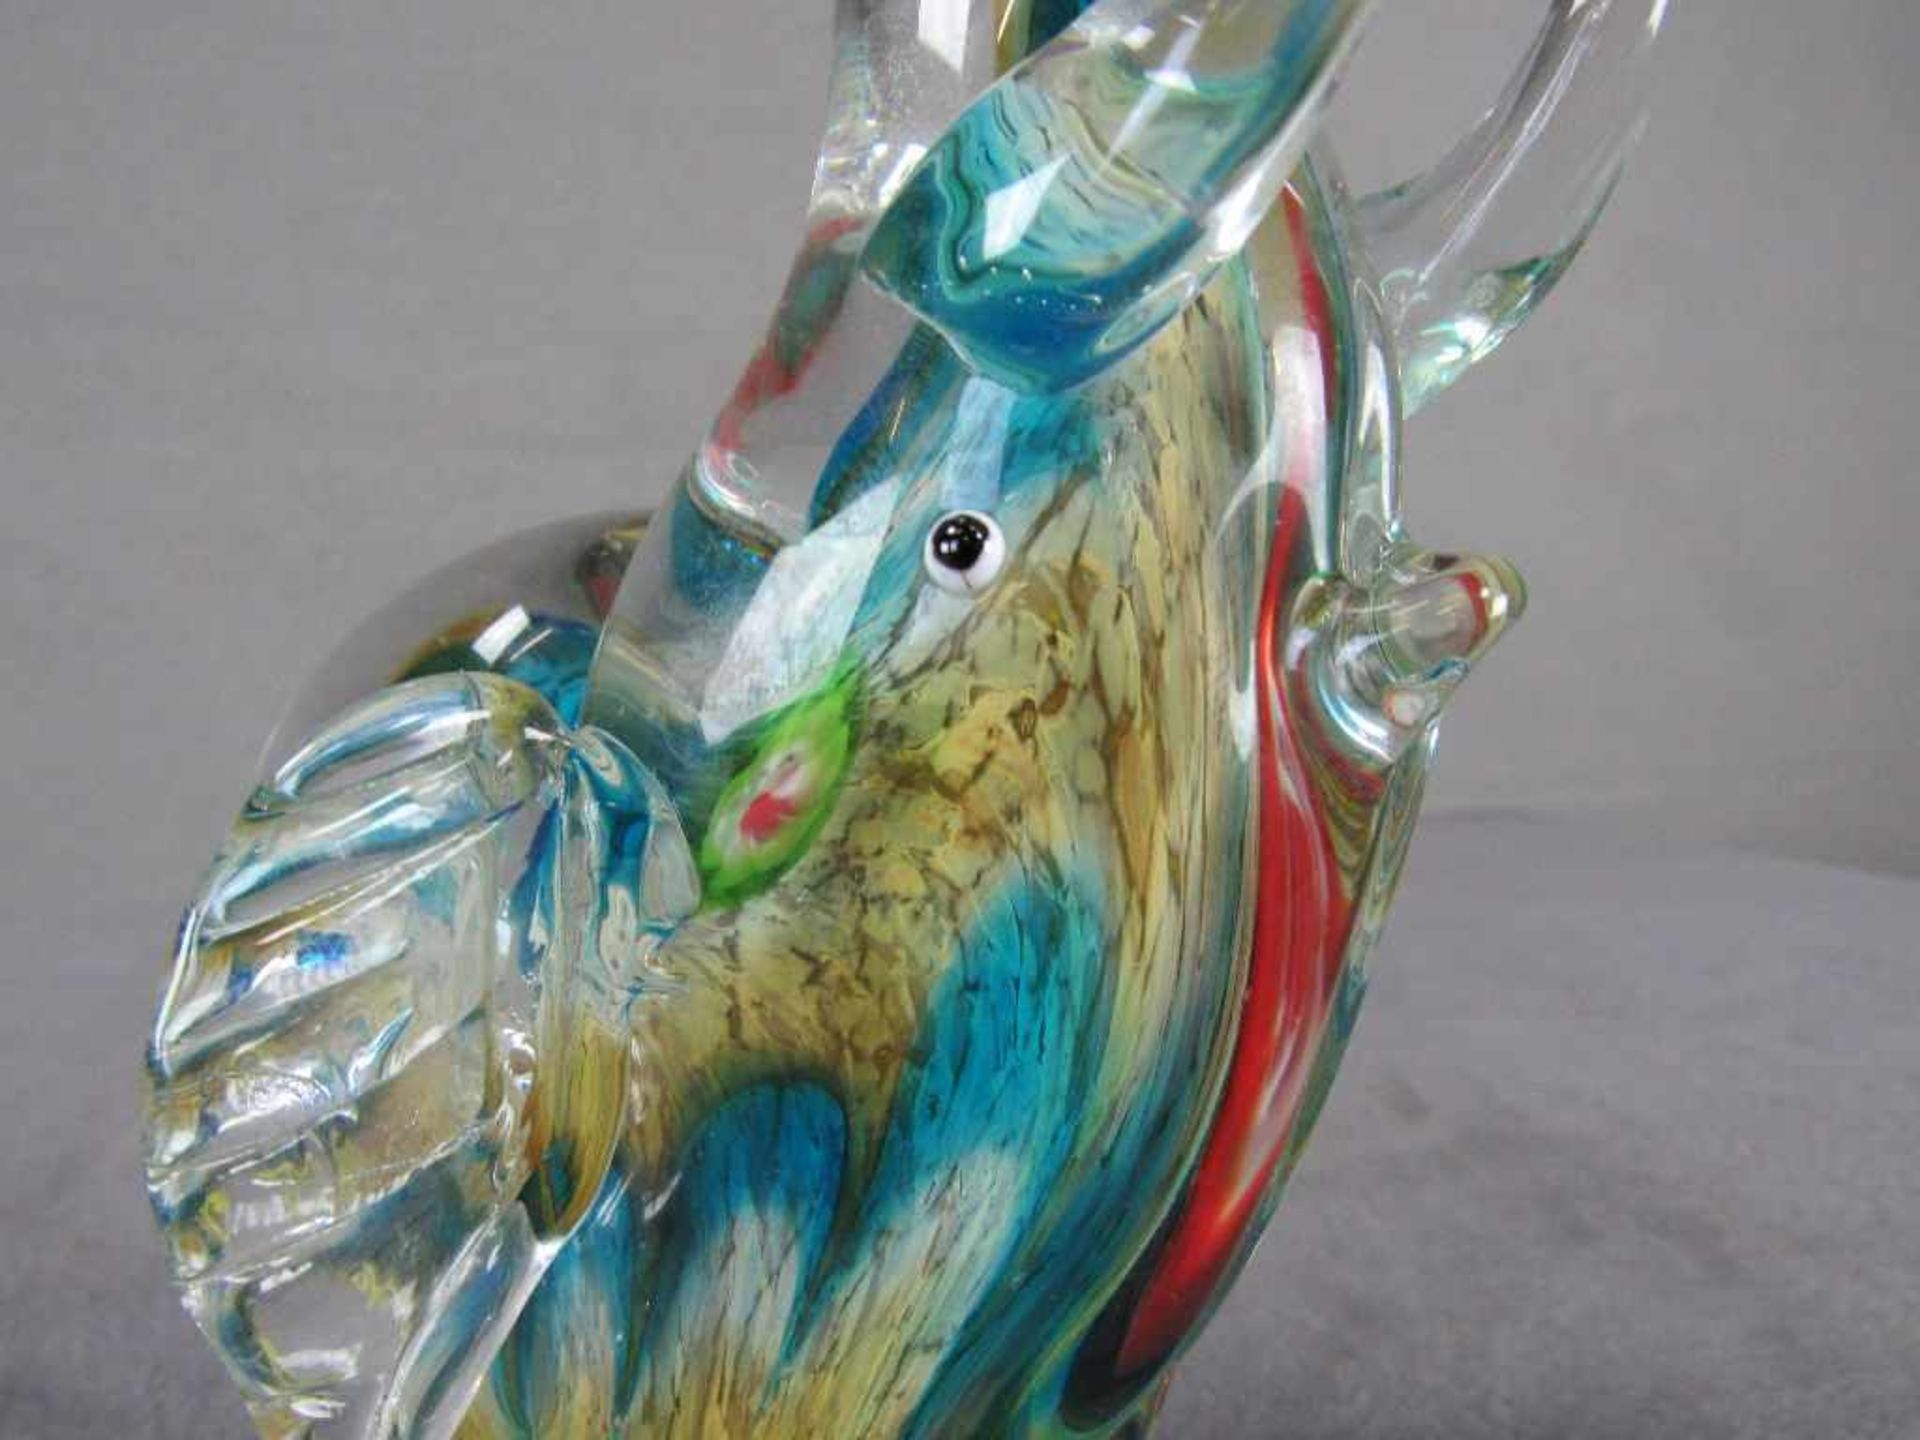 Glasskulptur Elefant evtl. Murano farbliche Einschmelzungen 32cm hoch - Image 6 of 6